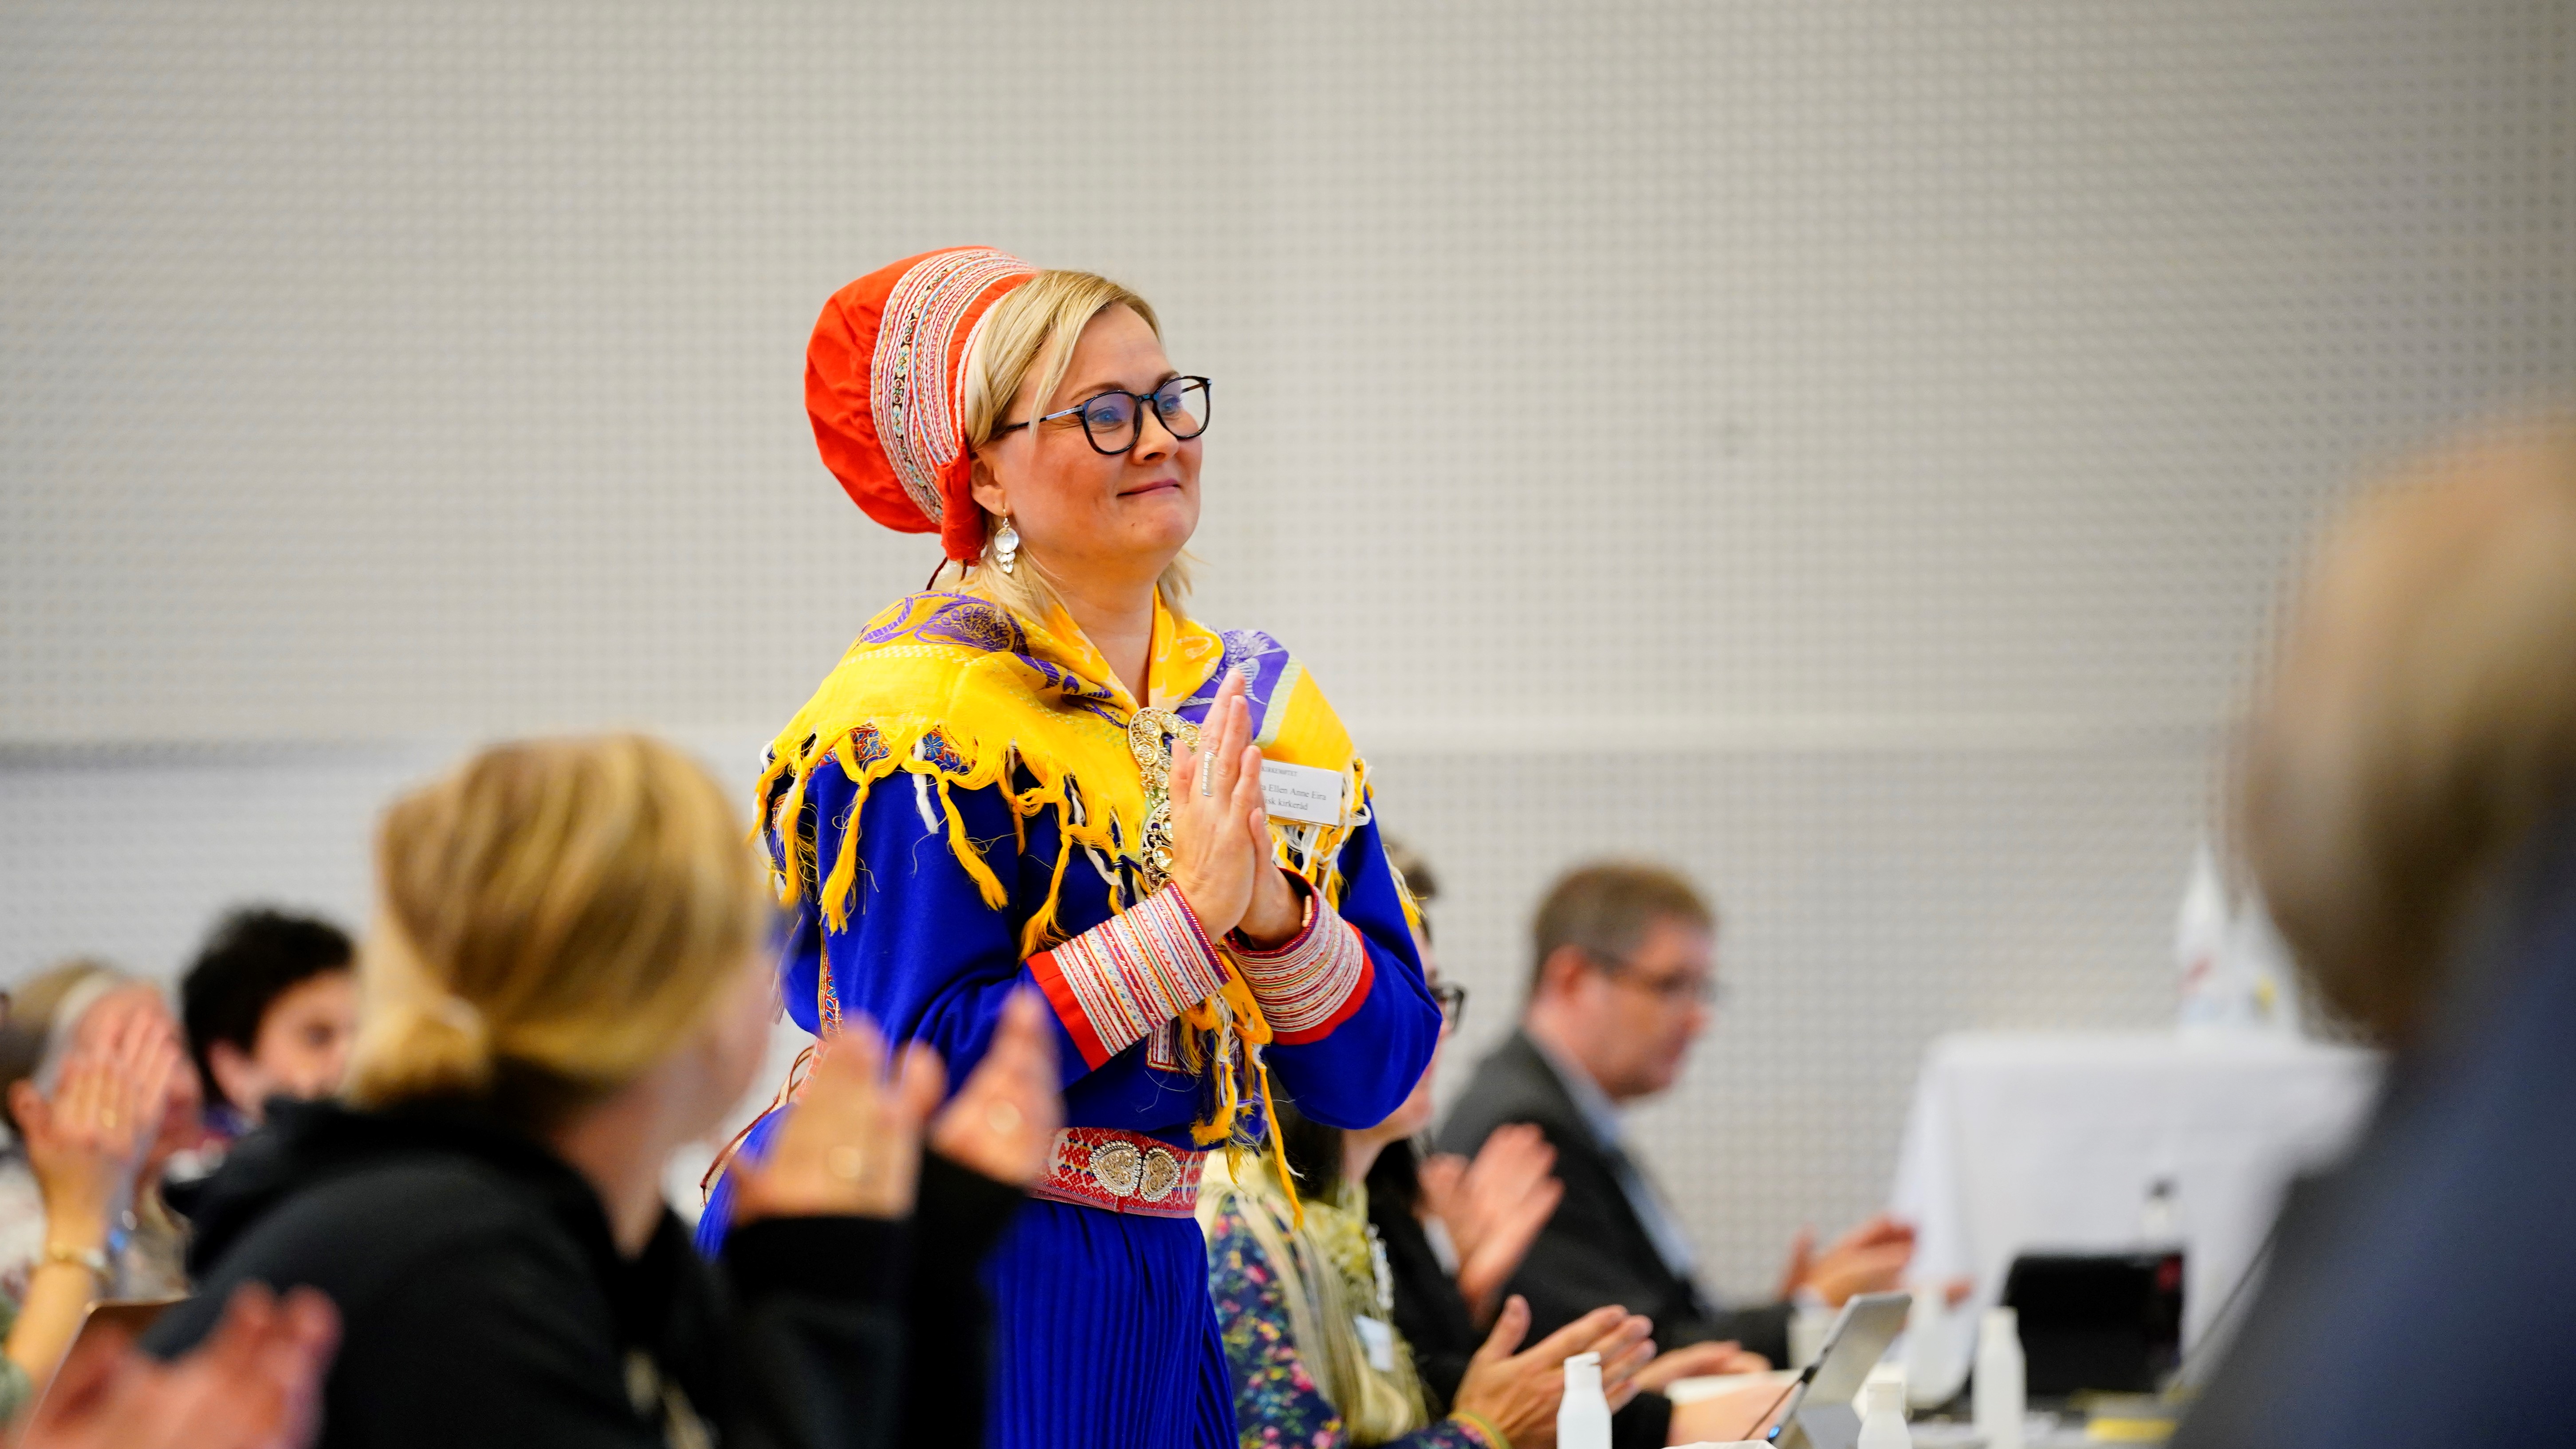 Sara Ellen Anne Eira er leder av Samisk kirkeråd. Foto: Ole Martin Wold